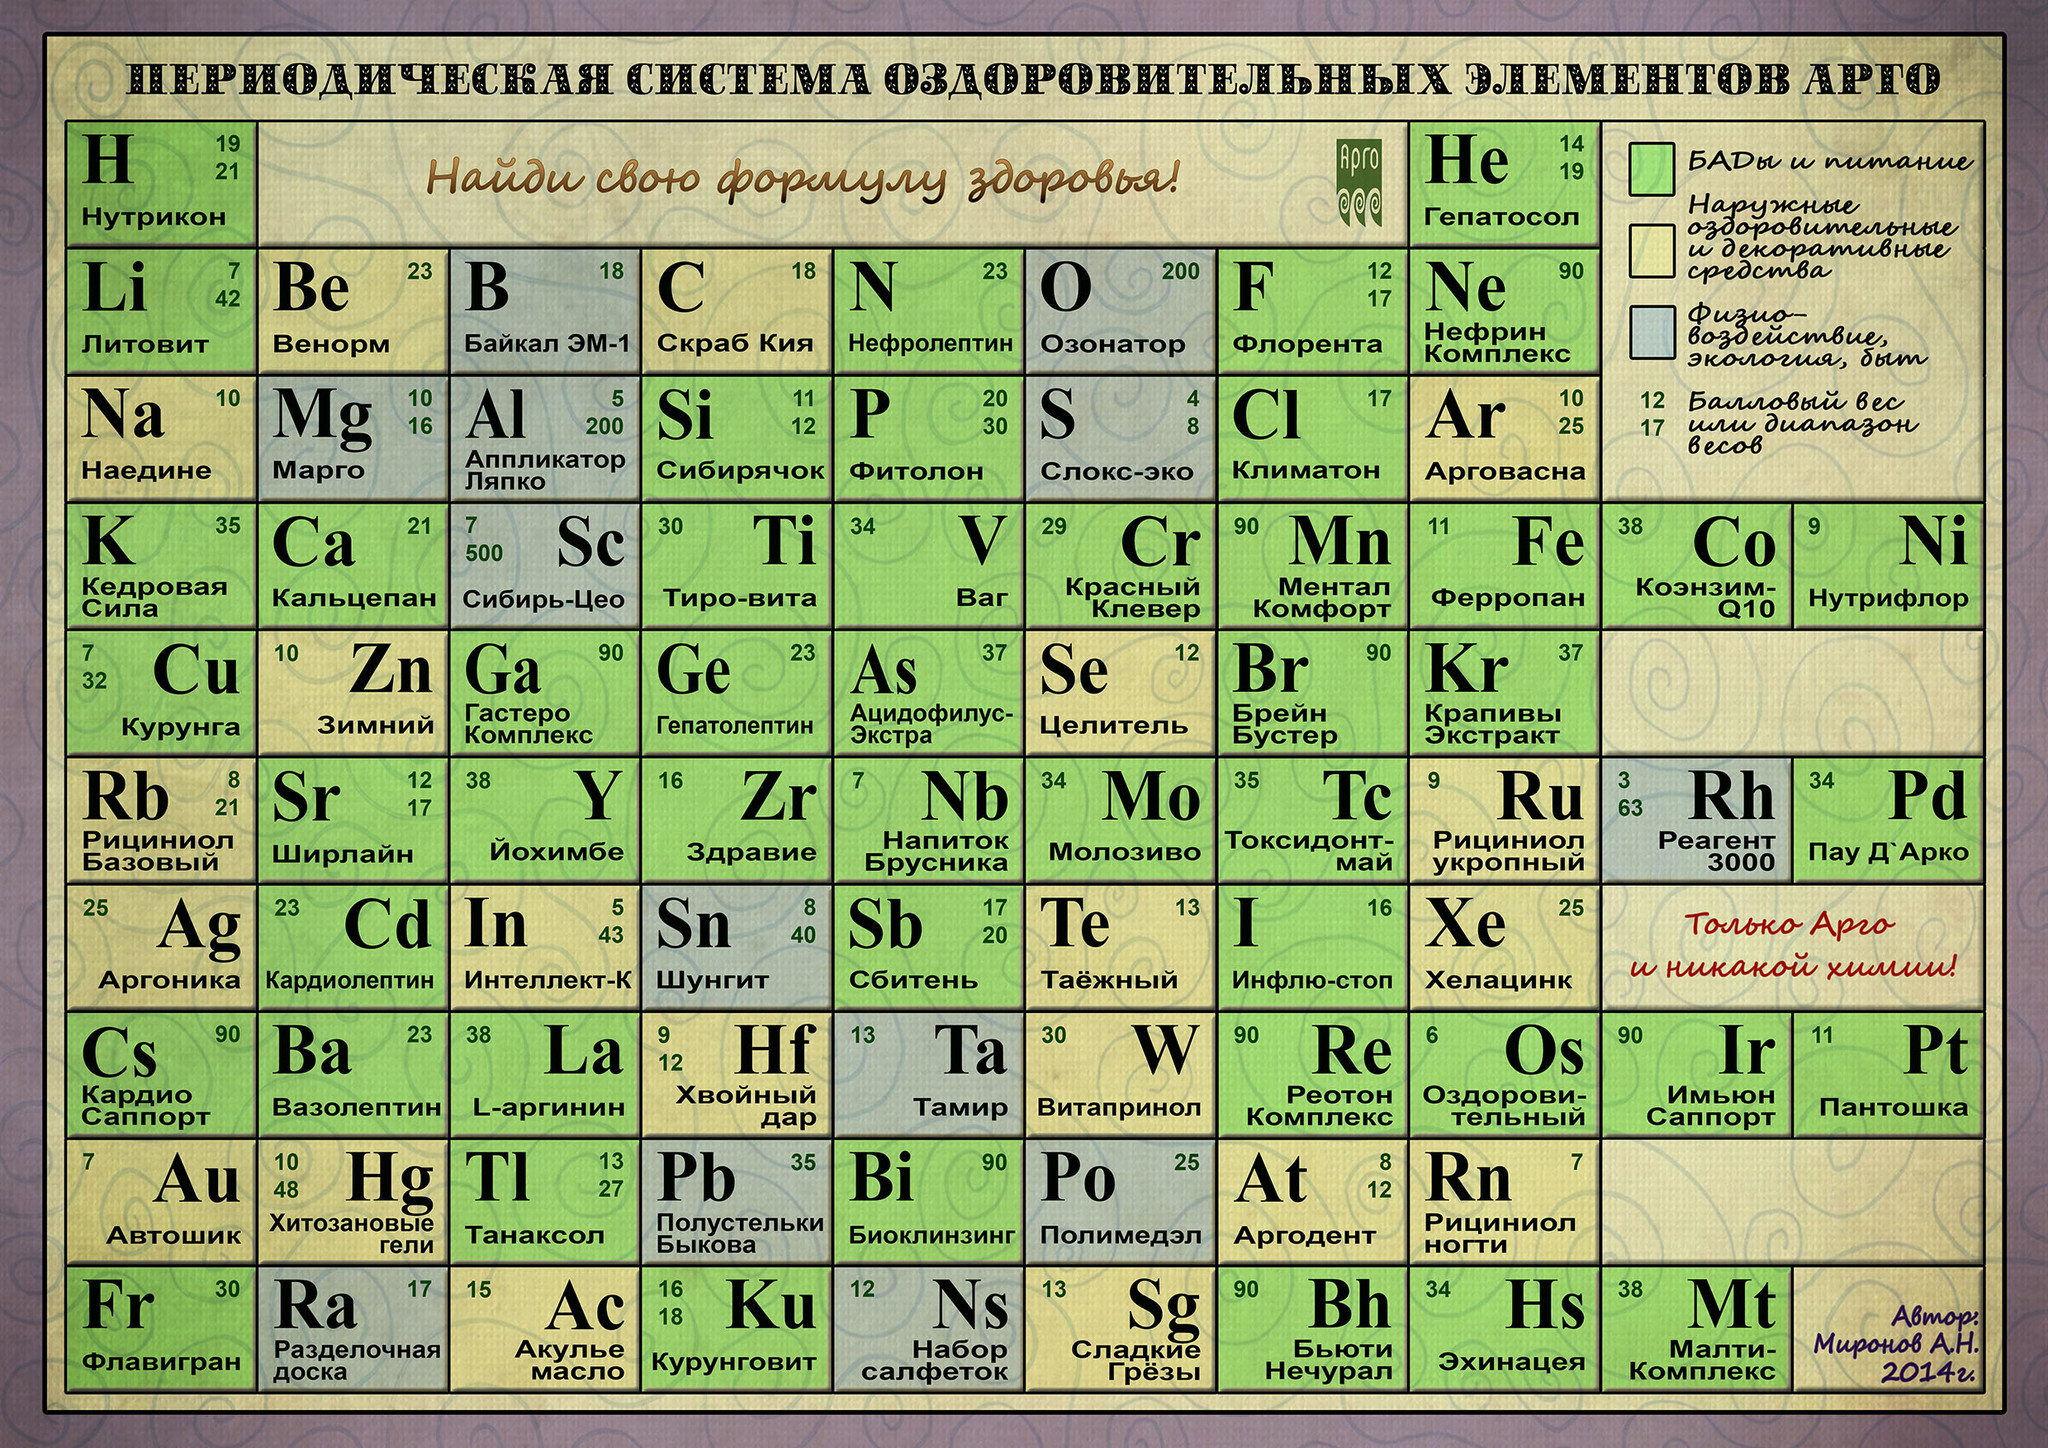 Похожие химические элементы